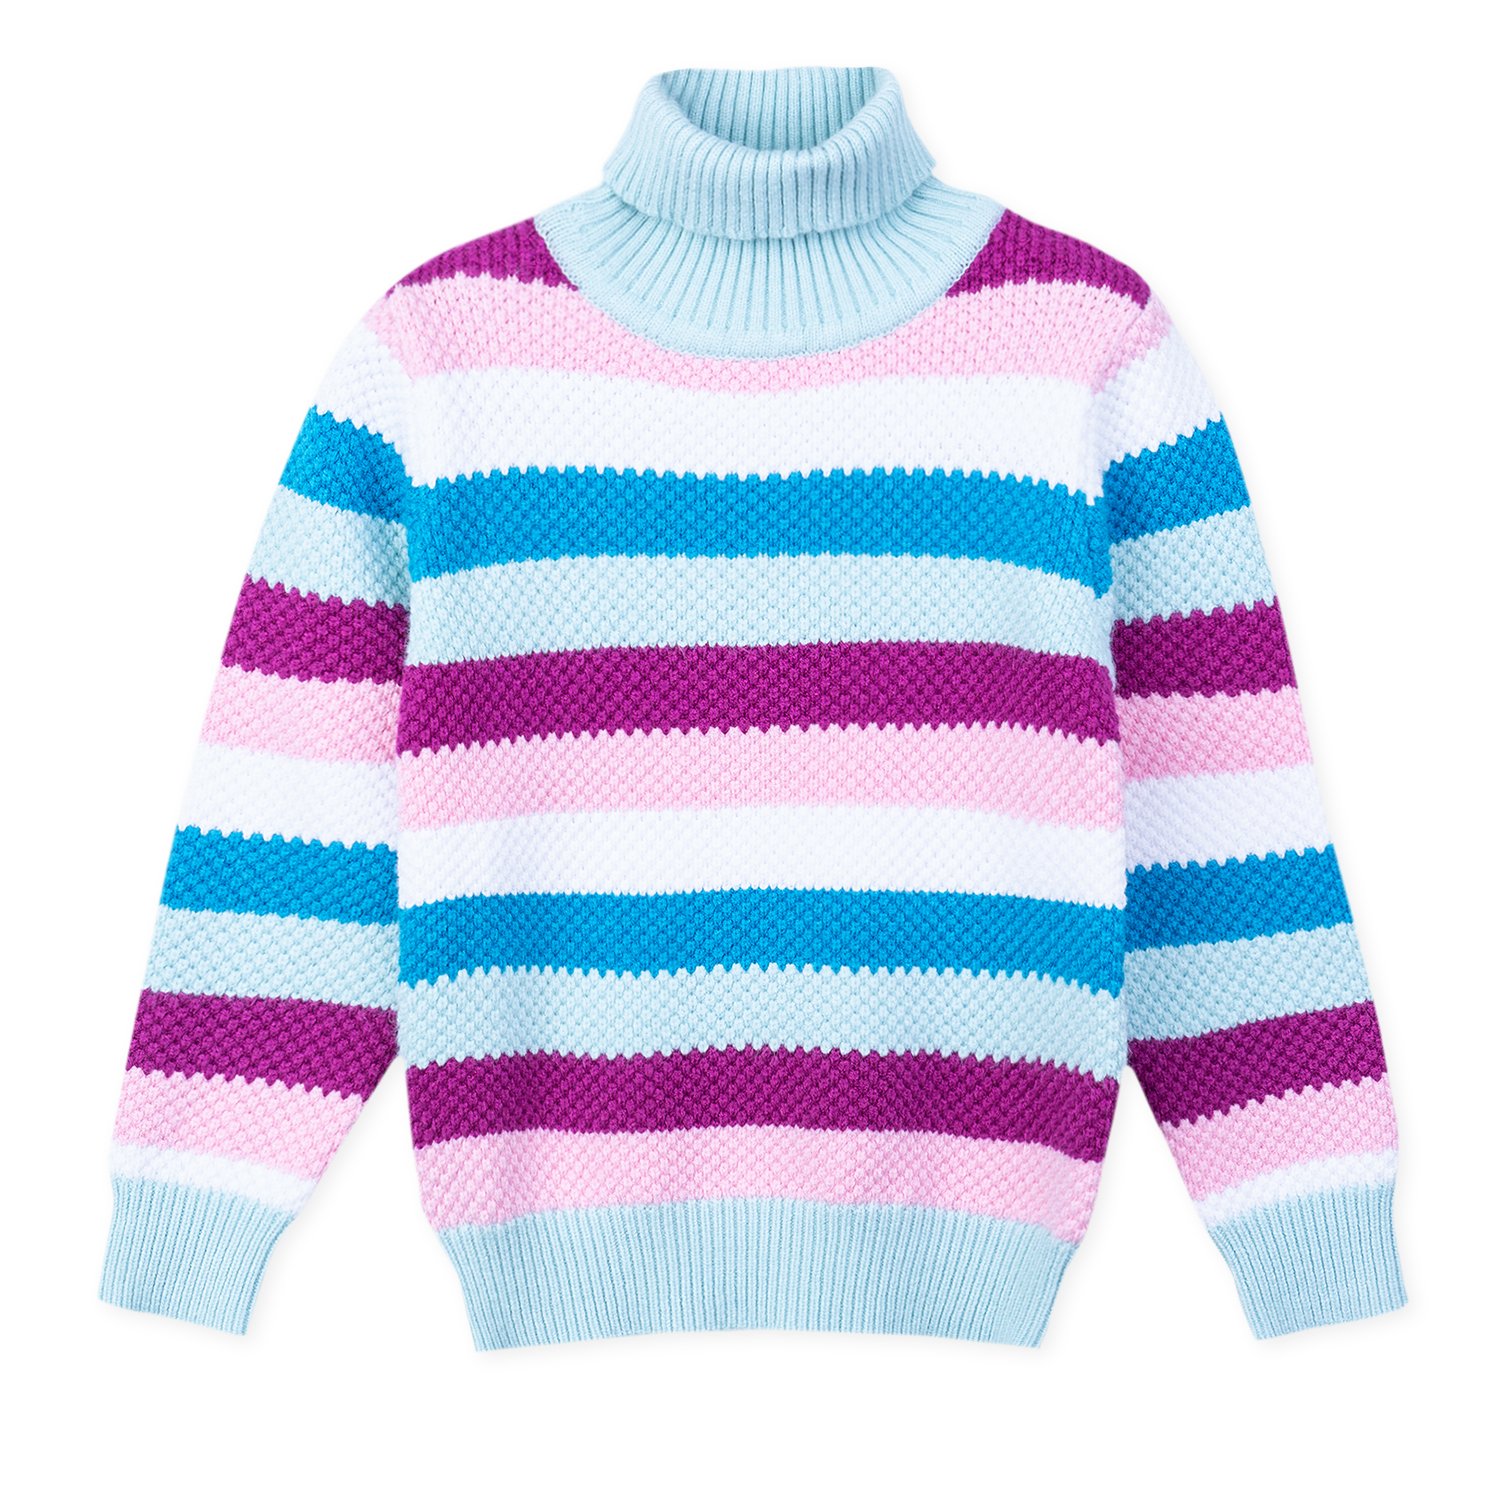 картинки свитер для детей в детском саду